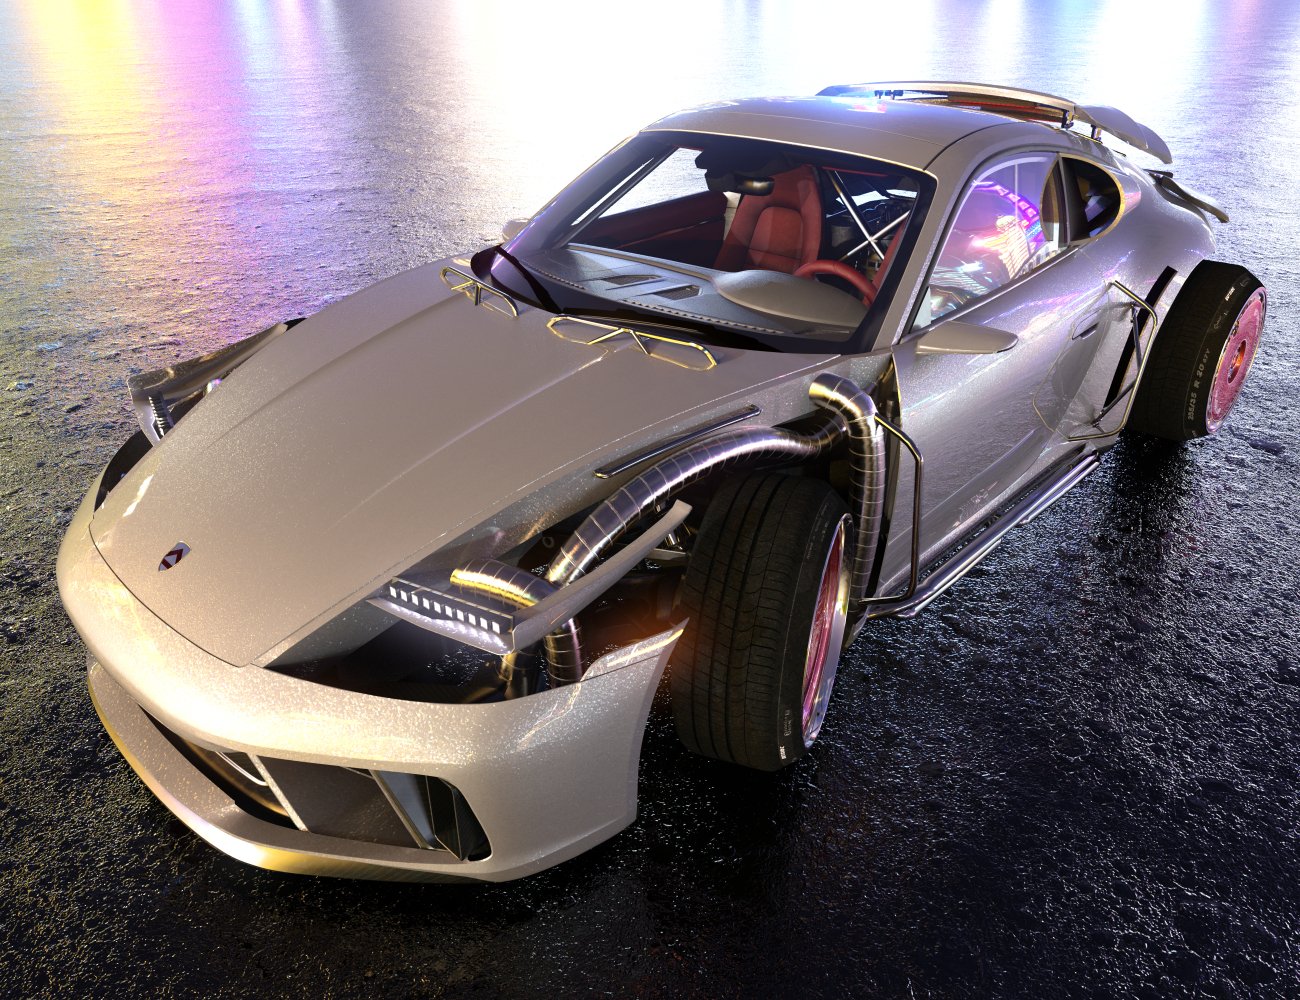 Cyber Racer by: Merlin StudiosZYstance, 3D Models by Daz 3D